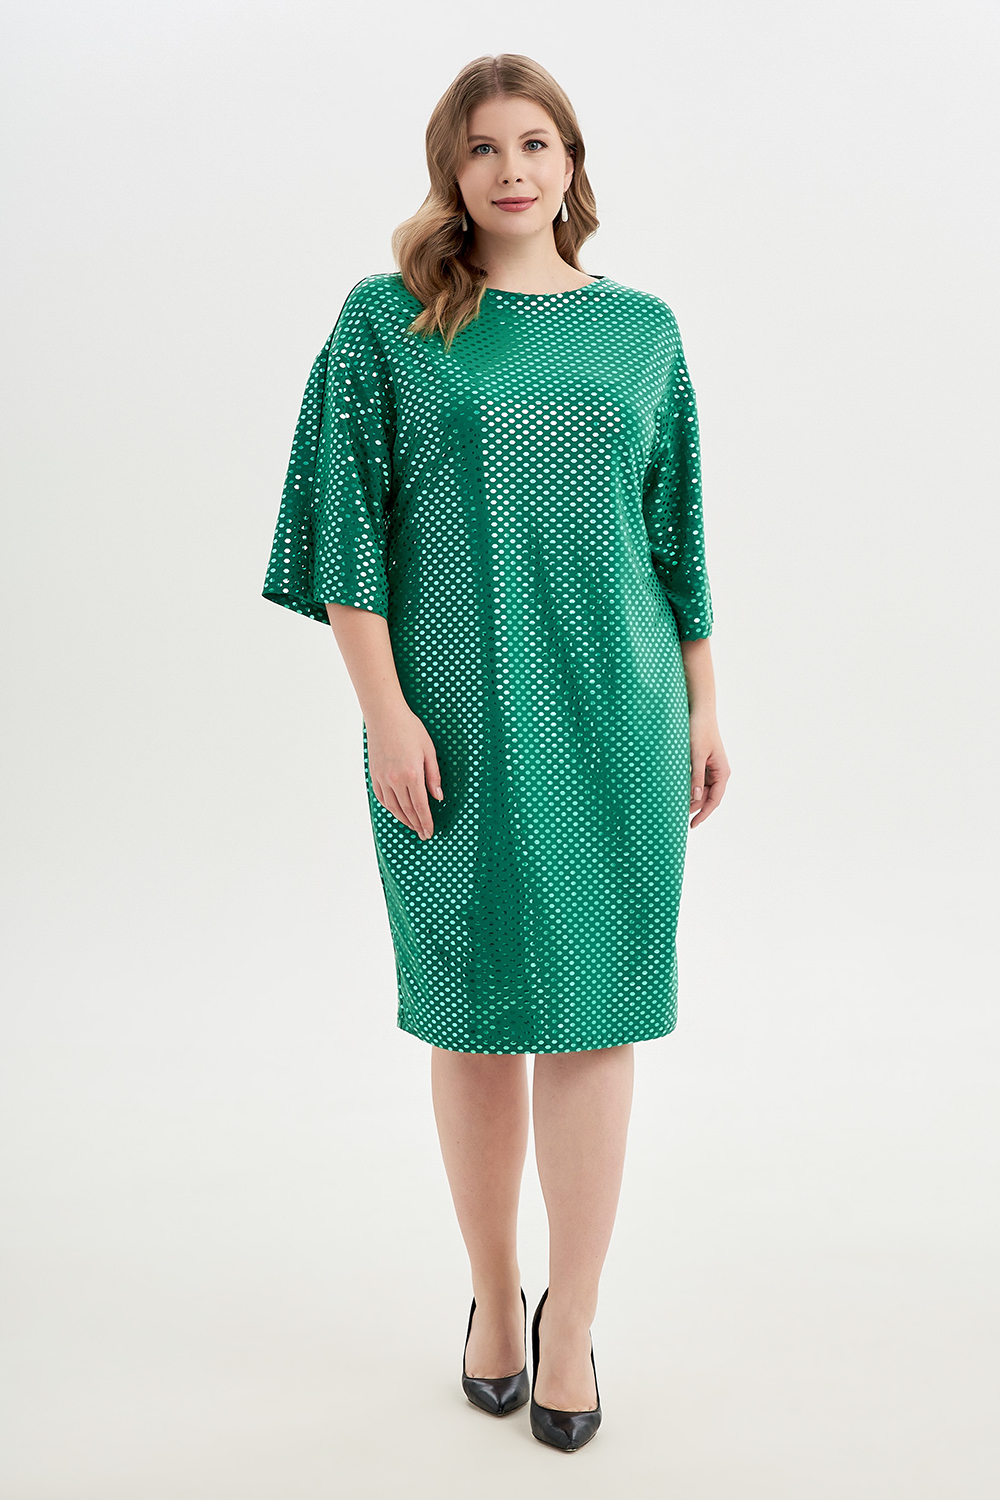 Платье женское OLSI 2305019 зеленое 56 RU